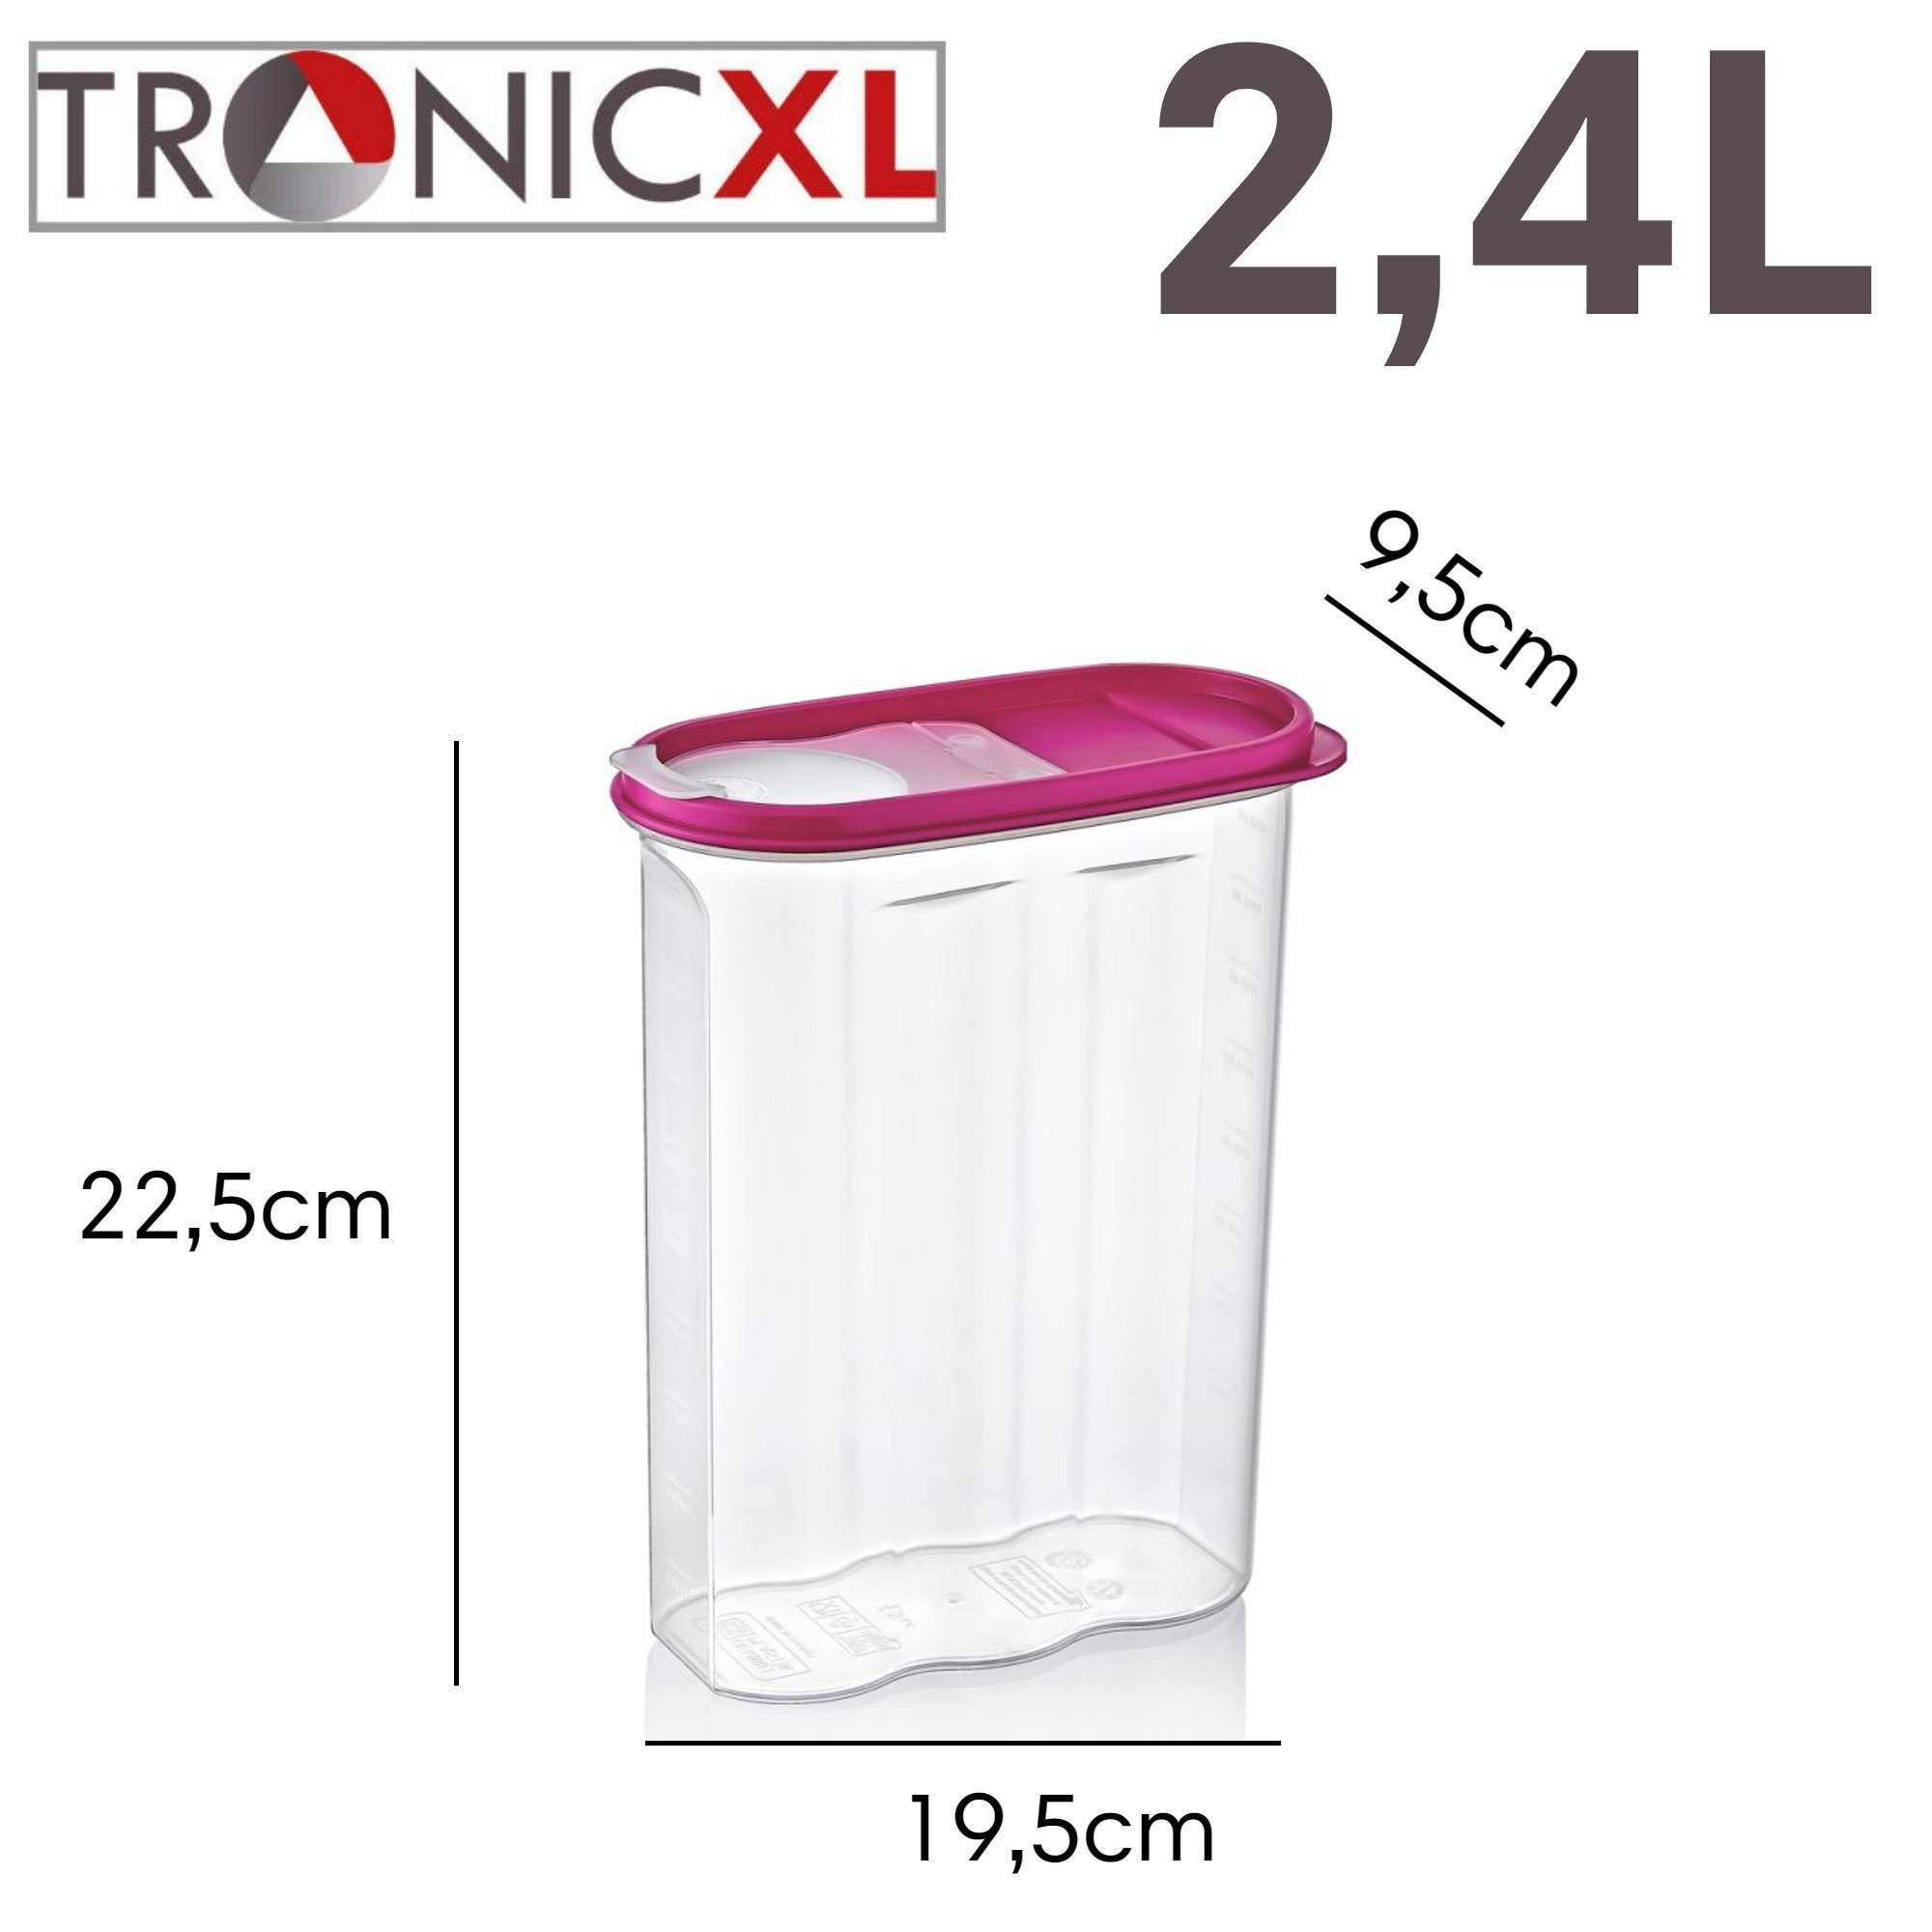 TronicXL Vorratsdose (Set, 4x Stück Set Kunststoff, Dose Schüttdosen Deckel), Vorratsdosen 2,4l 4-tlg., groß Made in Schüttdose 4x stapelbar, Europa 4